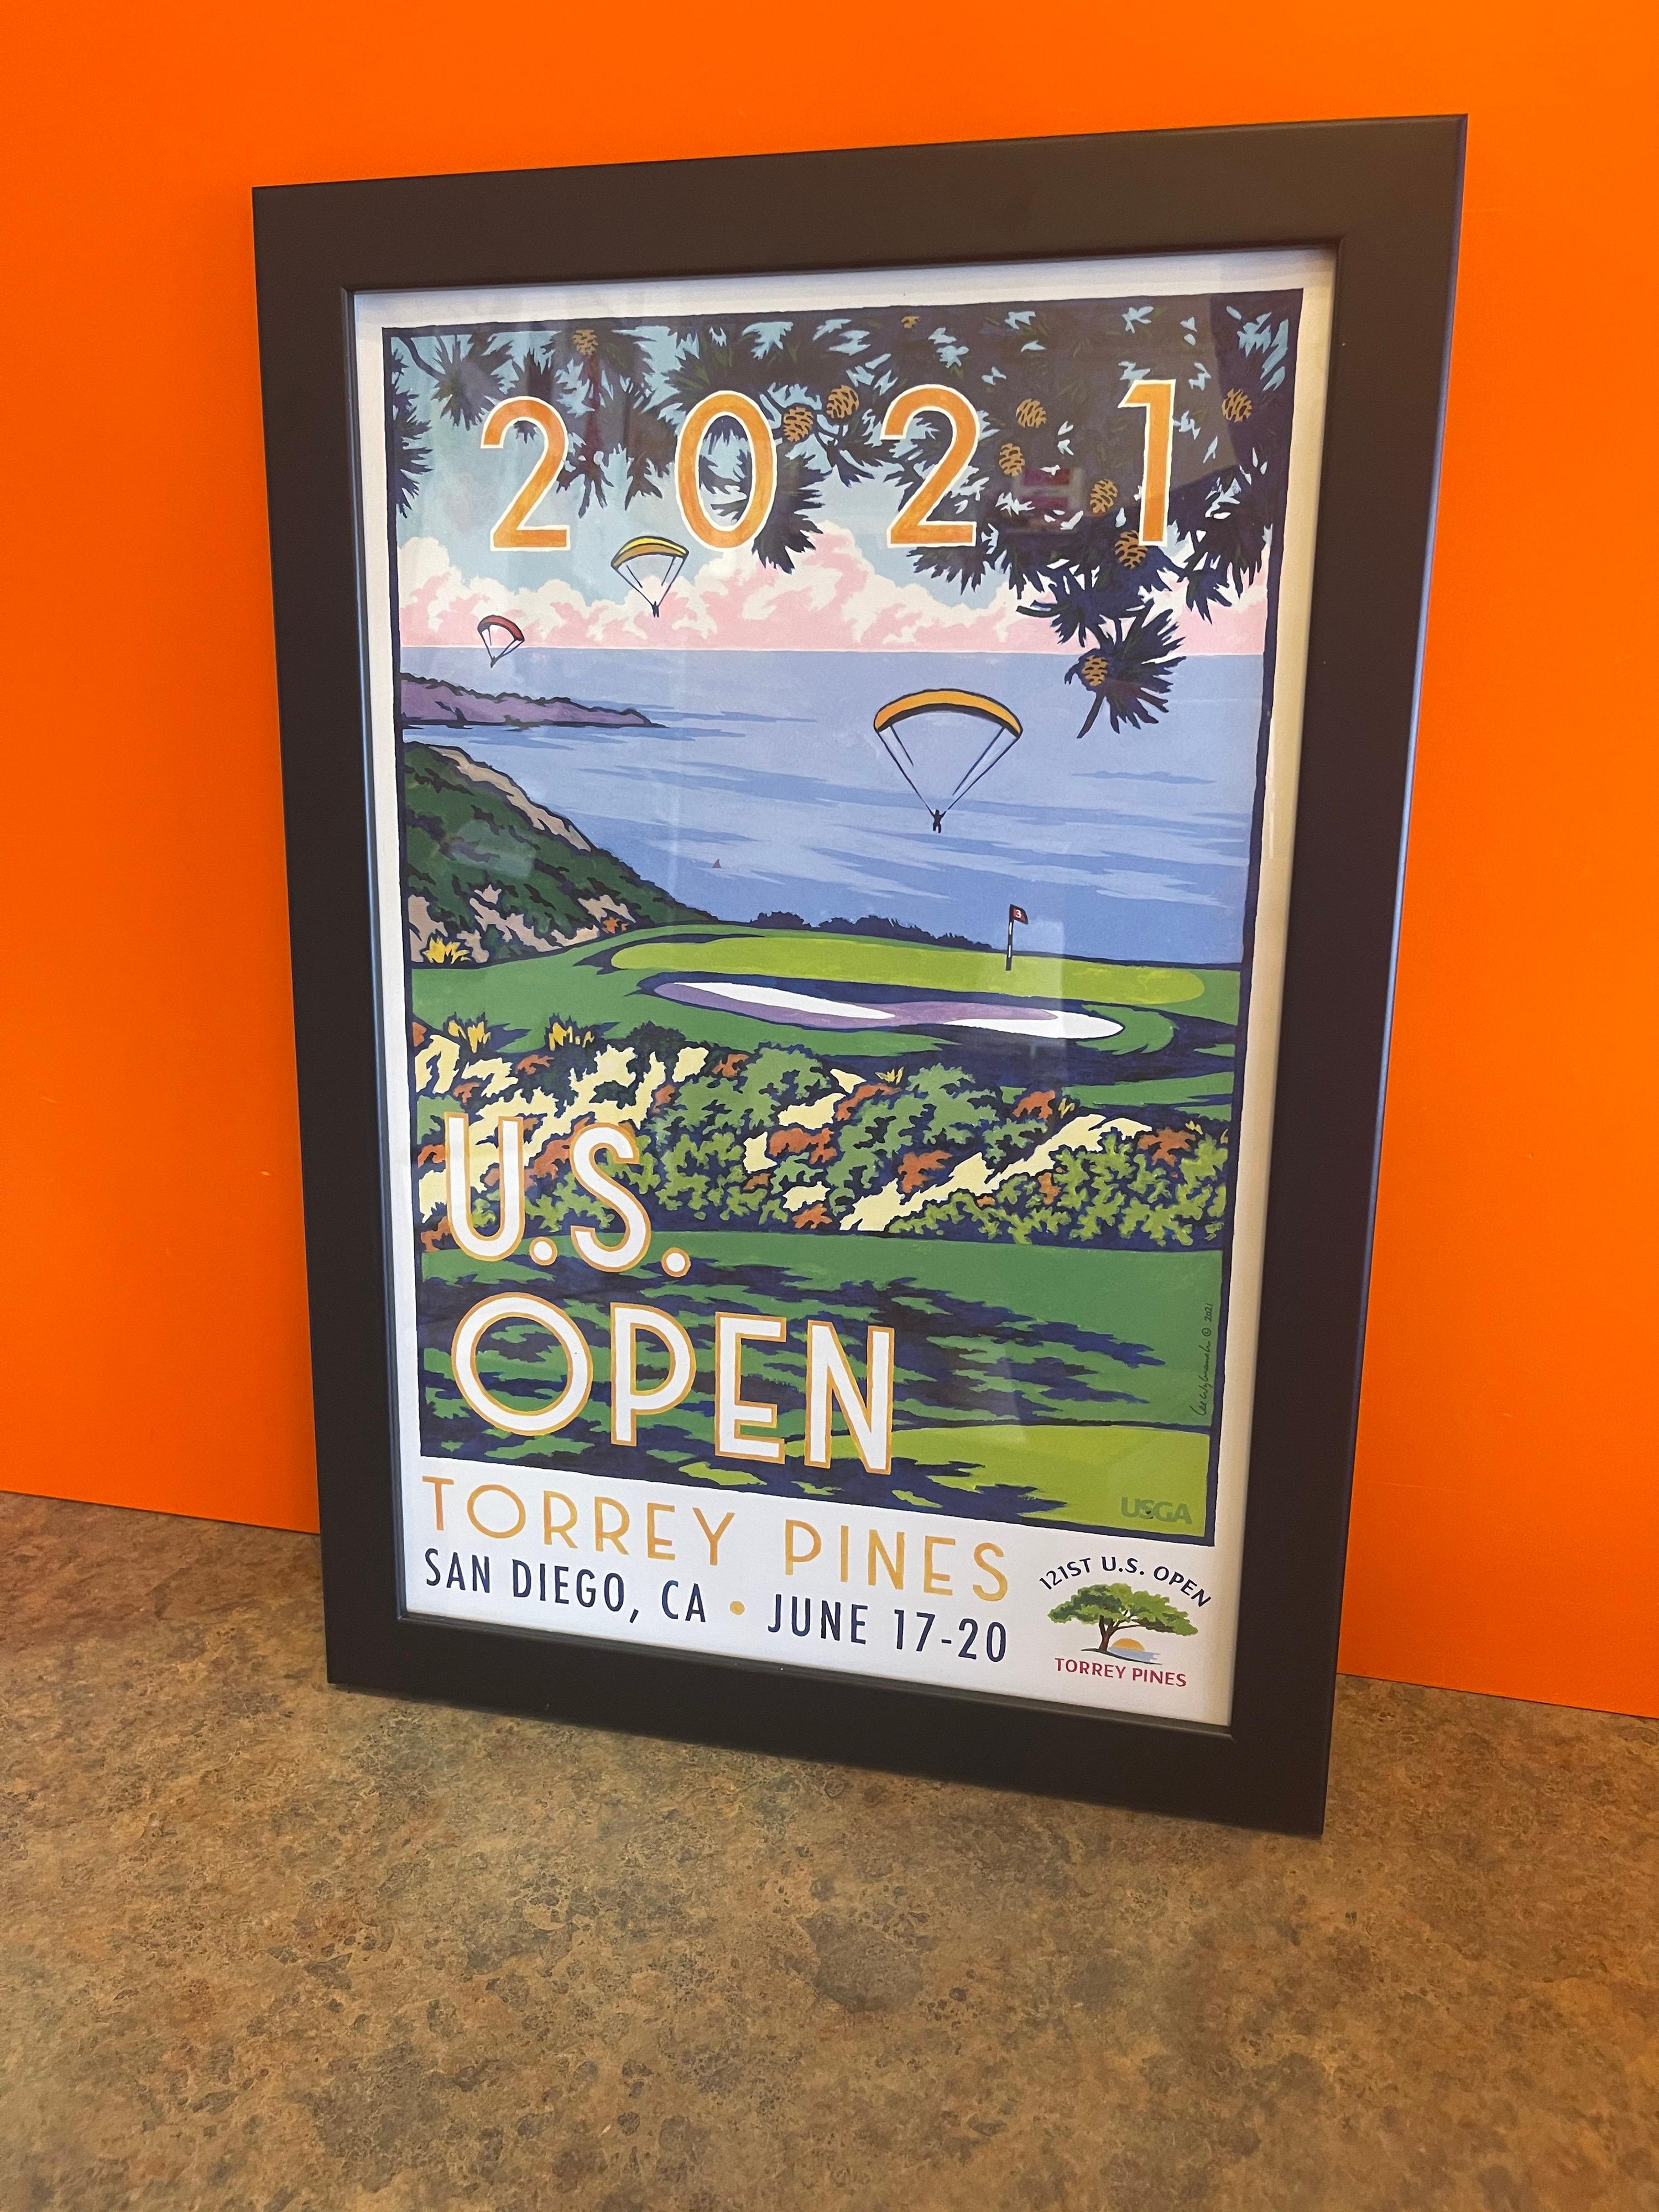 Sehr sammelwürdiges 2021 U.S. Open Golf Poster vom Torrey Pines Golfplatz in San Diego, CA von dem bekannten Golfkünstler Lee Wybranski, circa 2021. Der Druck ist in ausgezeichnetem Zustand mit leuchtenden Farben und ohne Risse oder Nadellöcher. Die